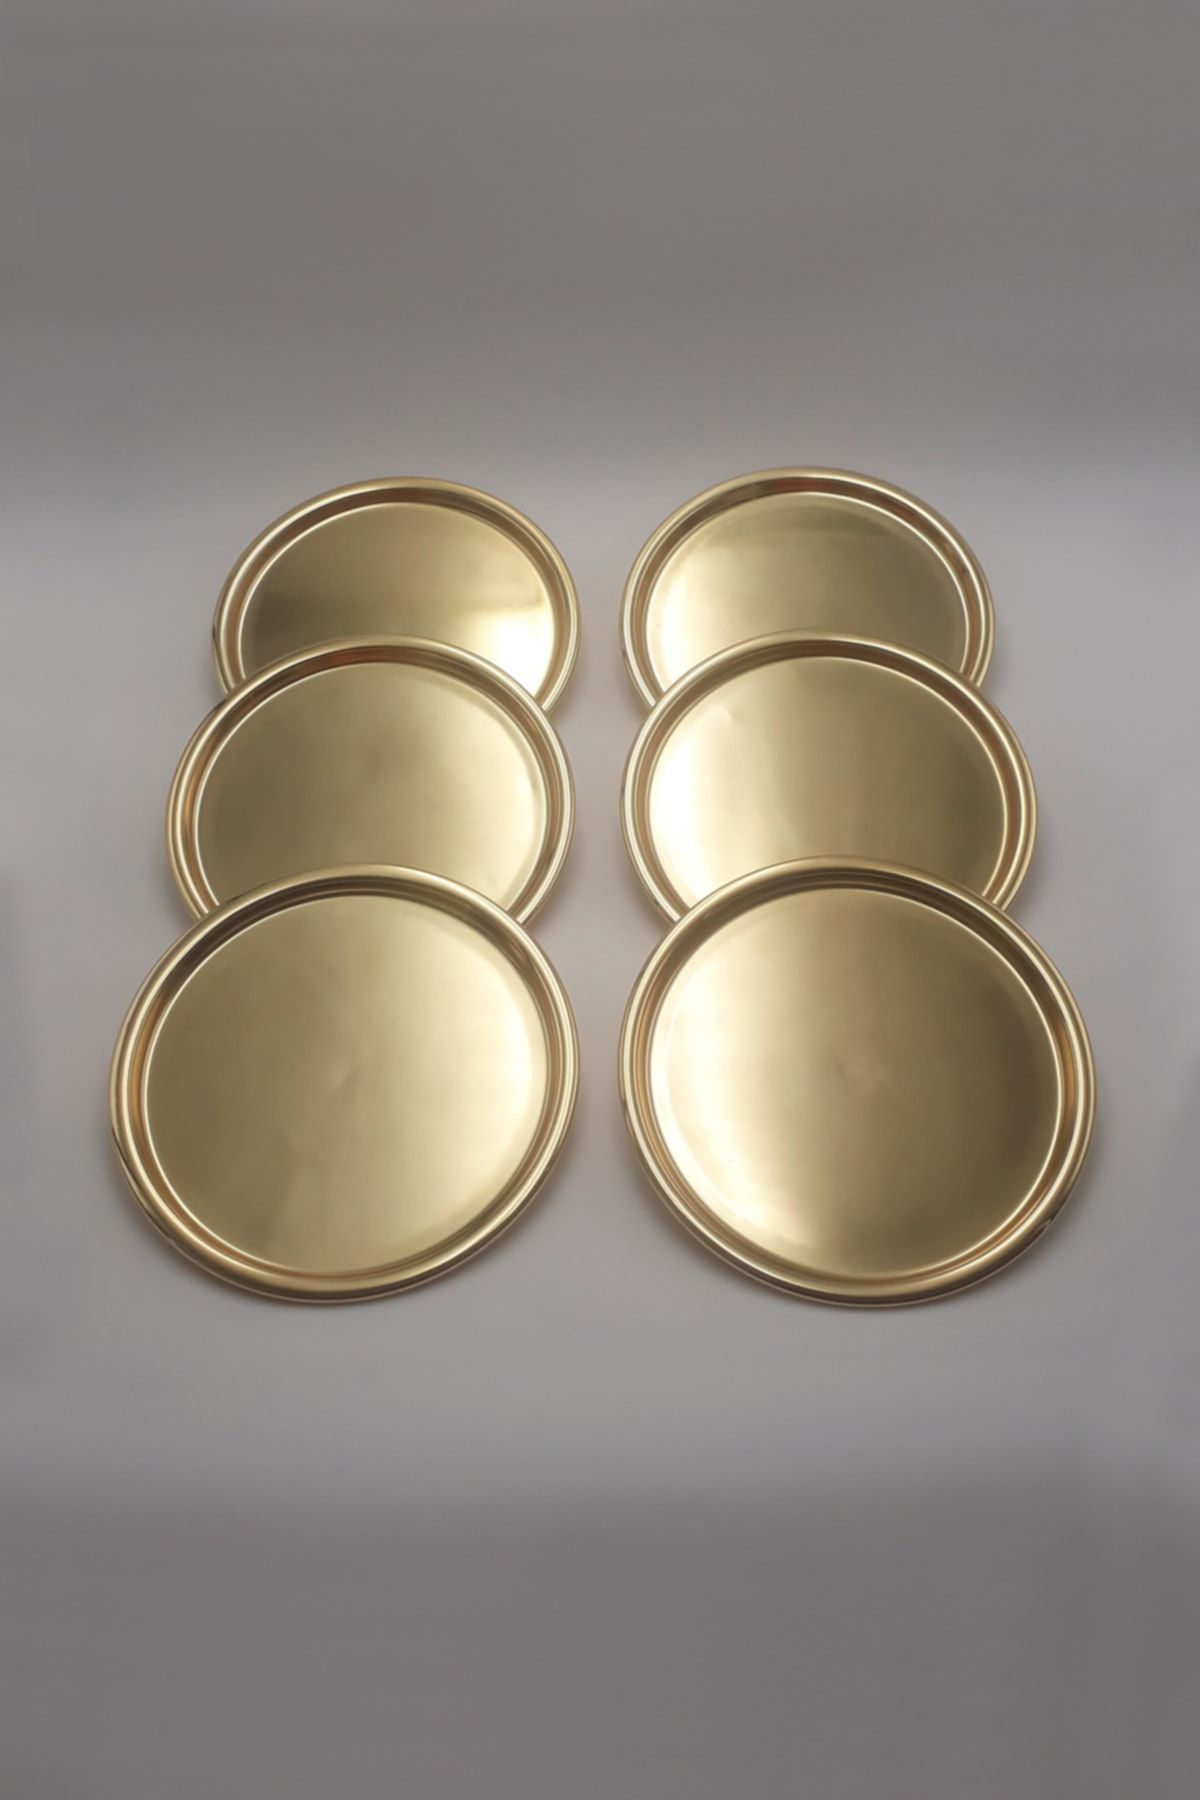 Fiyakalı Ürünler Atölyesi 6'lı Gold Metal Dekoratif Servis Tepsisi, Çay Ve Kahve Tepsisi, Pasta Ve Tatlı Sunum Tepsisi 22cm